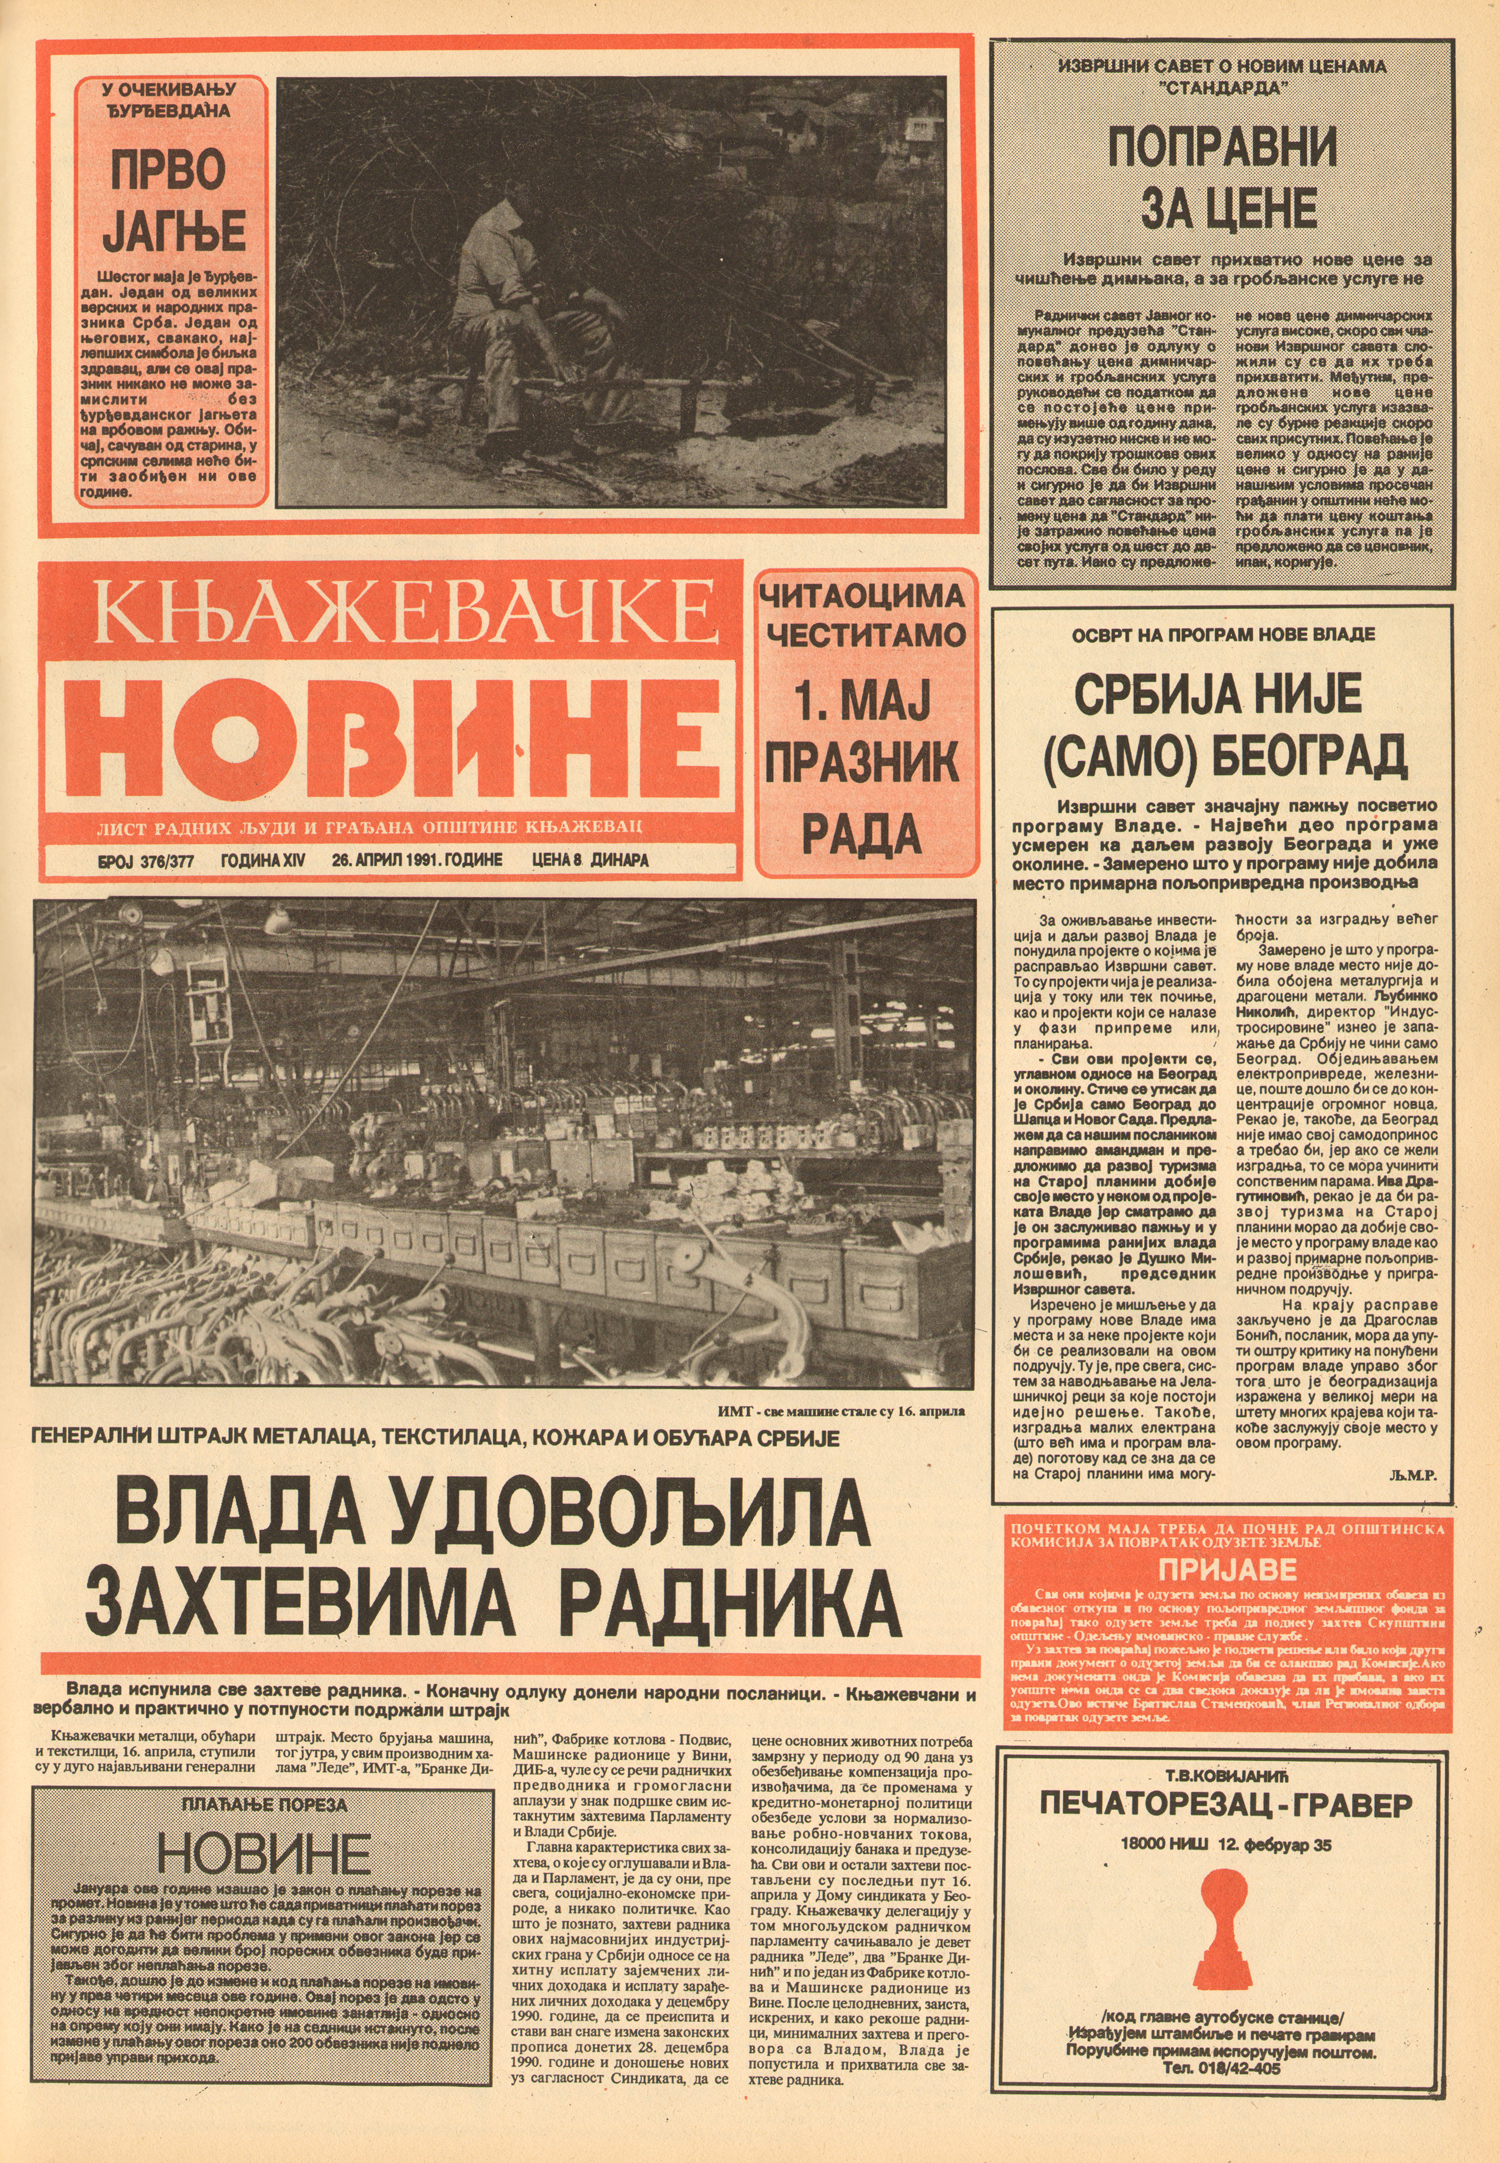 Књажевачке новине, број 376/377, година 1991